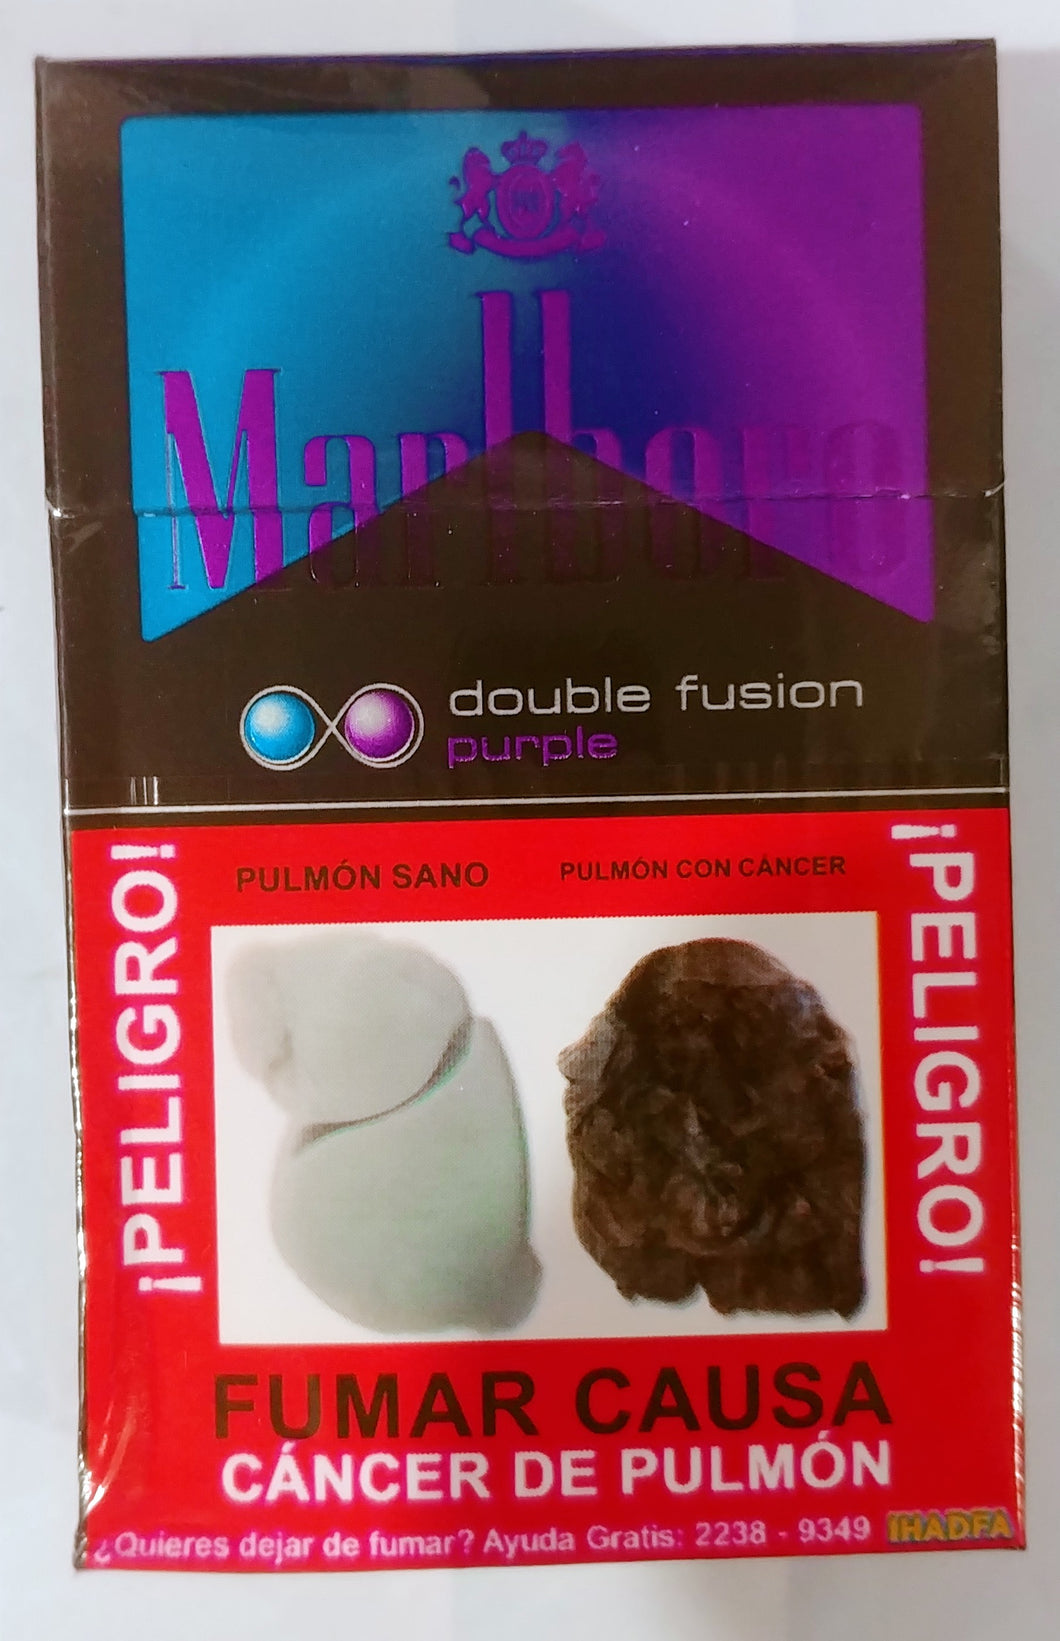 Cigarro Marlboro doble fusion grande